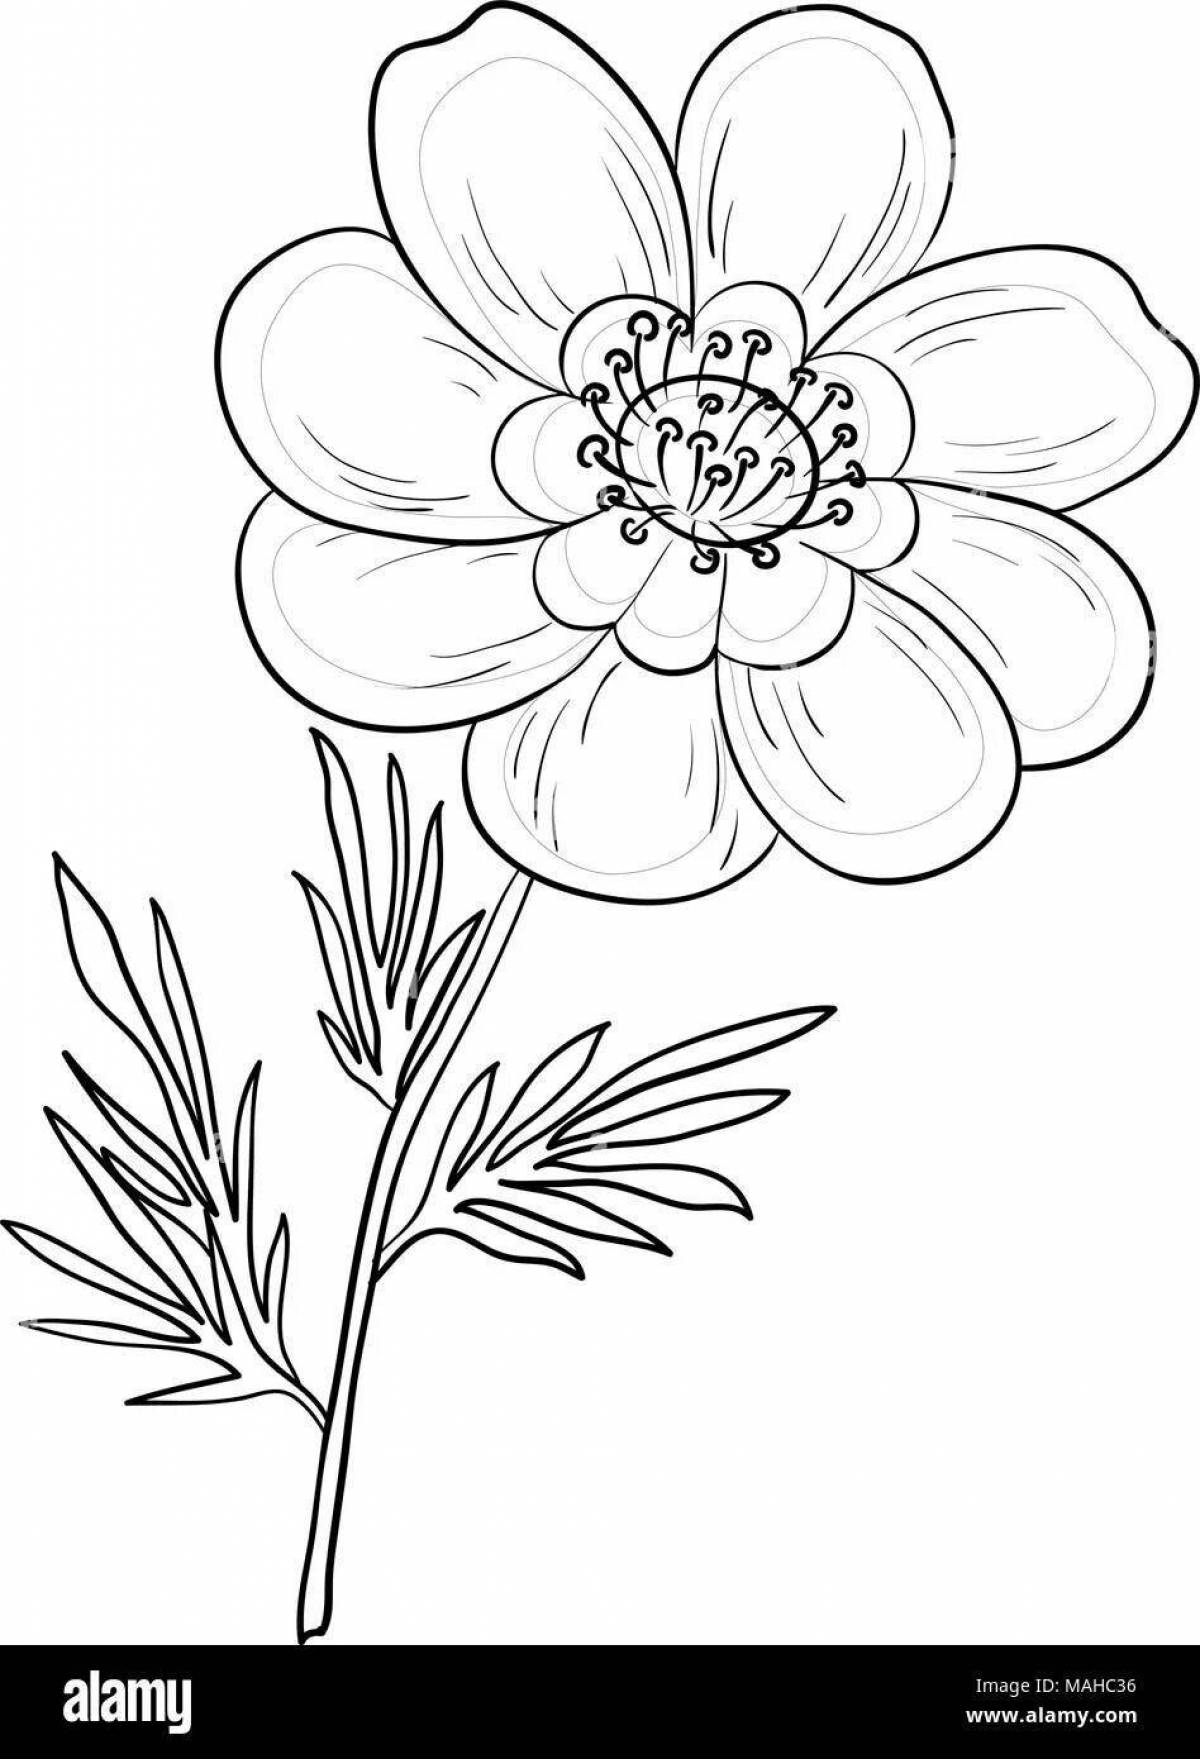 Раскраска очаровательный цветок лазорика